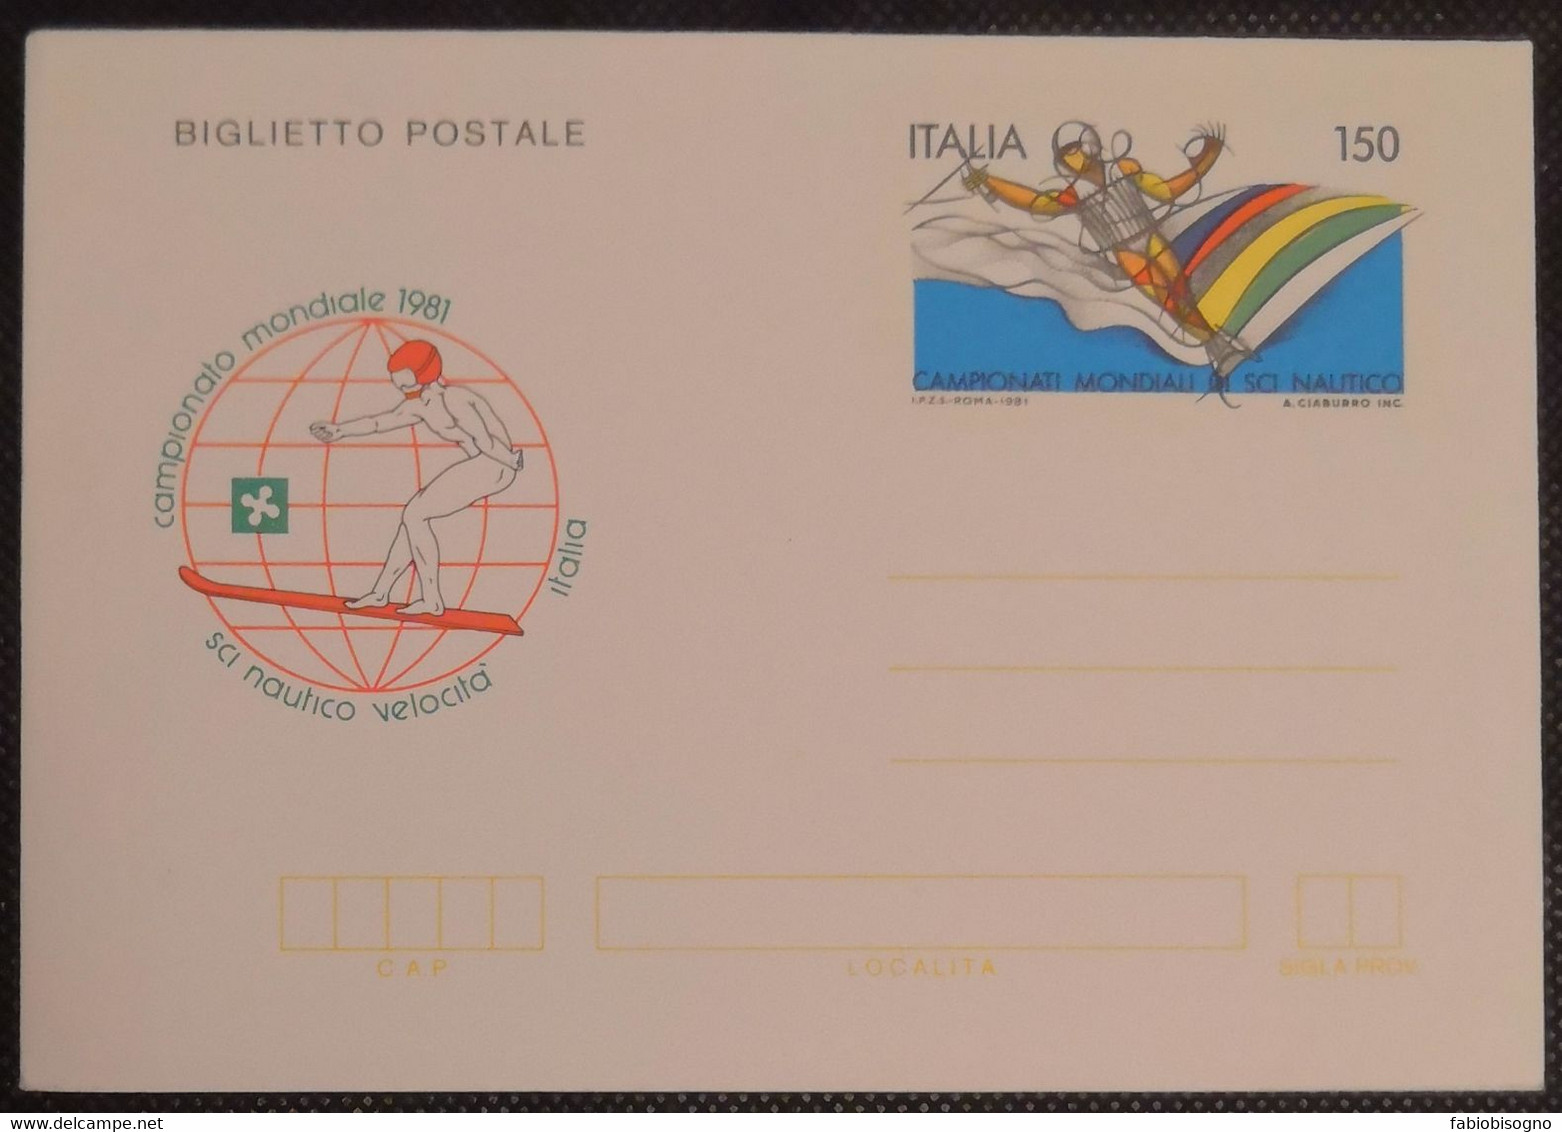 1981 Italia L.150 - Campionato Mondiale Sci Nautico Velocità - Postal Cover - Sci Nautico